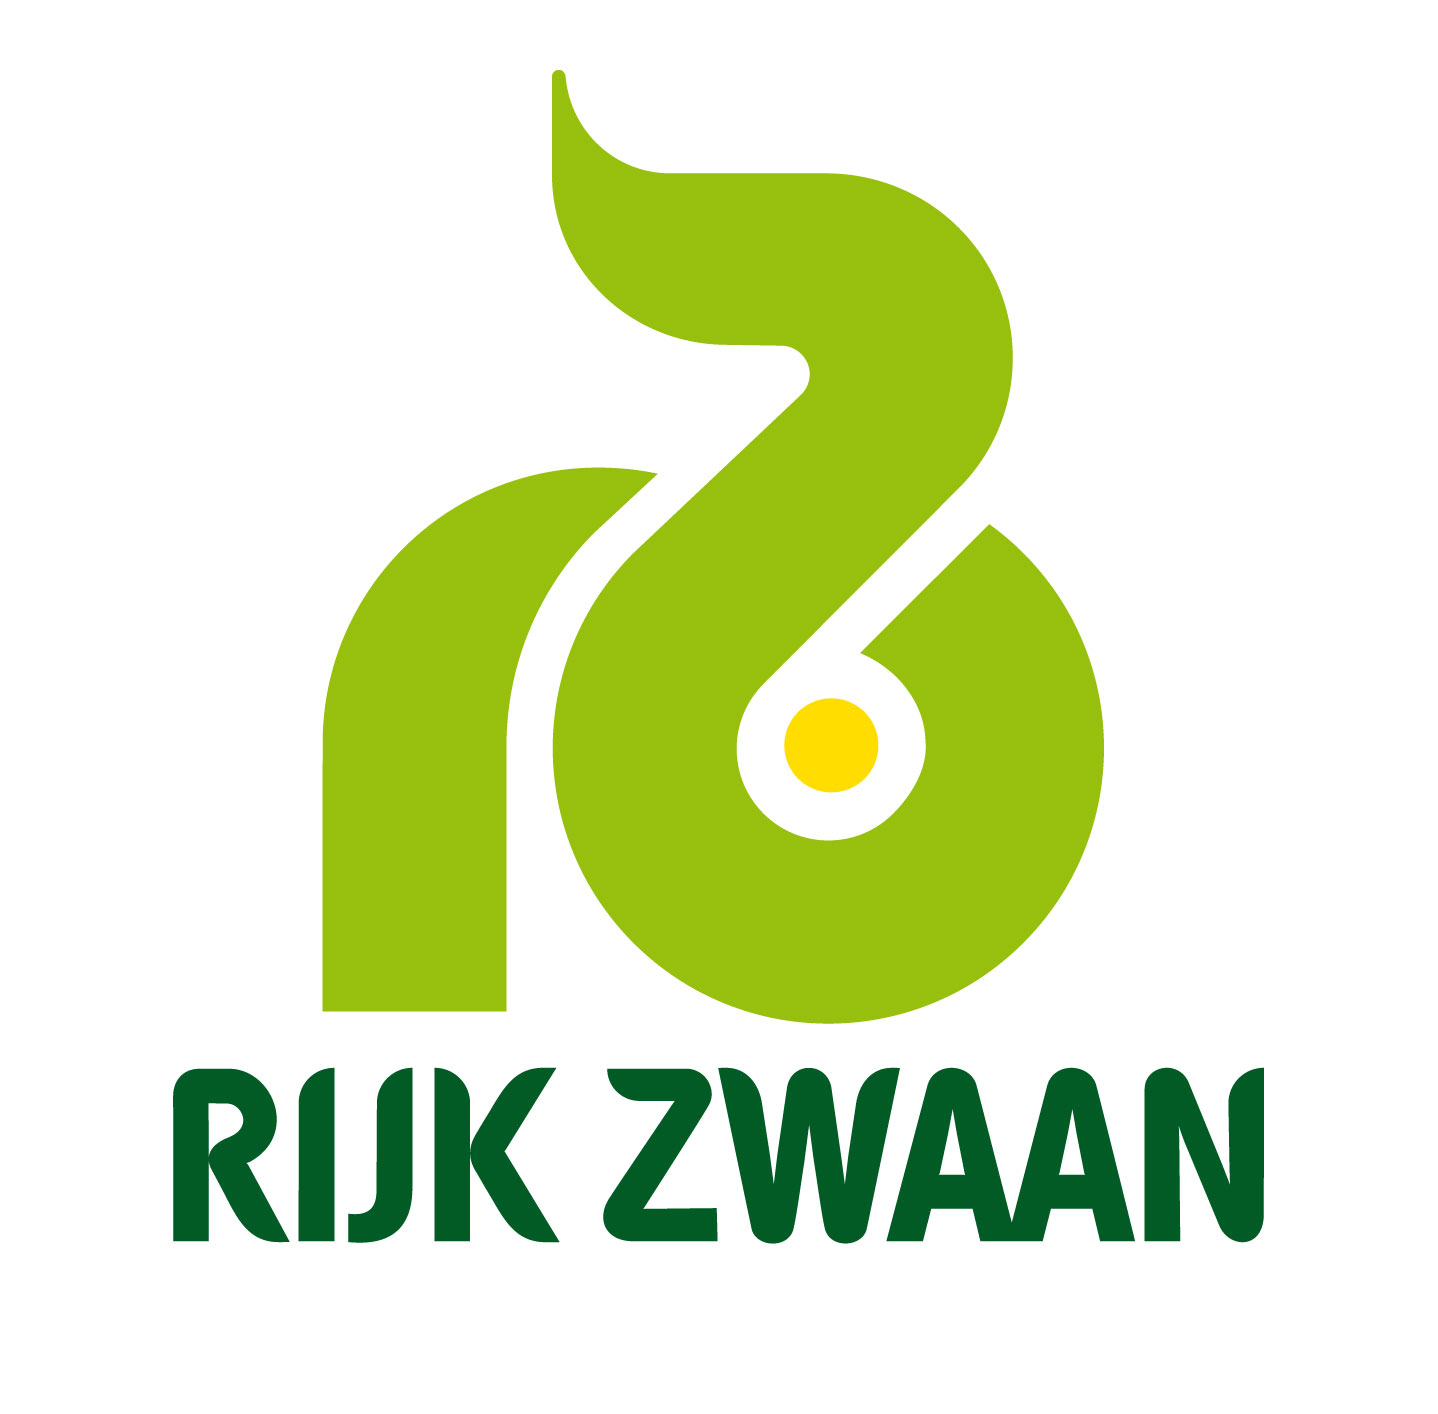 2019-10/1571310289_logo-rijk-zwaan.jpg